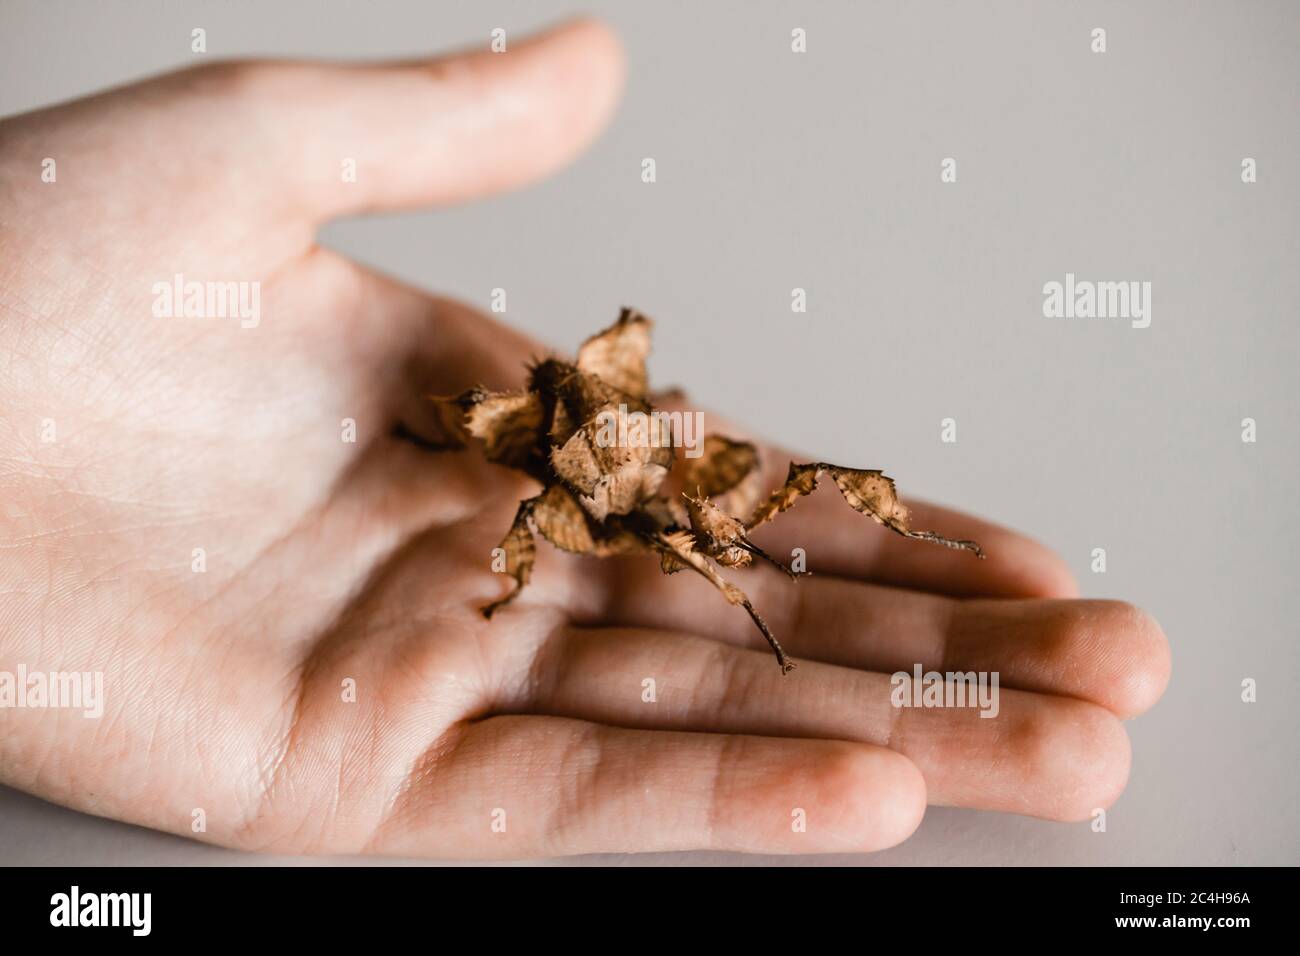 Weibliches Stachelblatt-Insekt auf der Hand eines Kindes Stockfoto